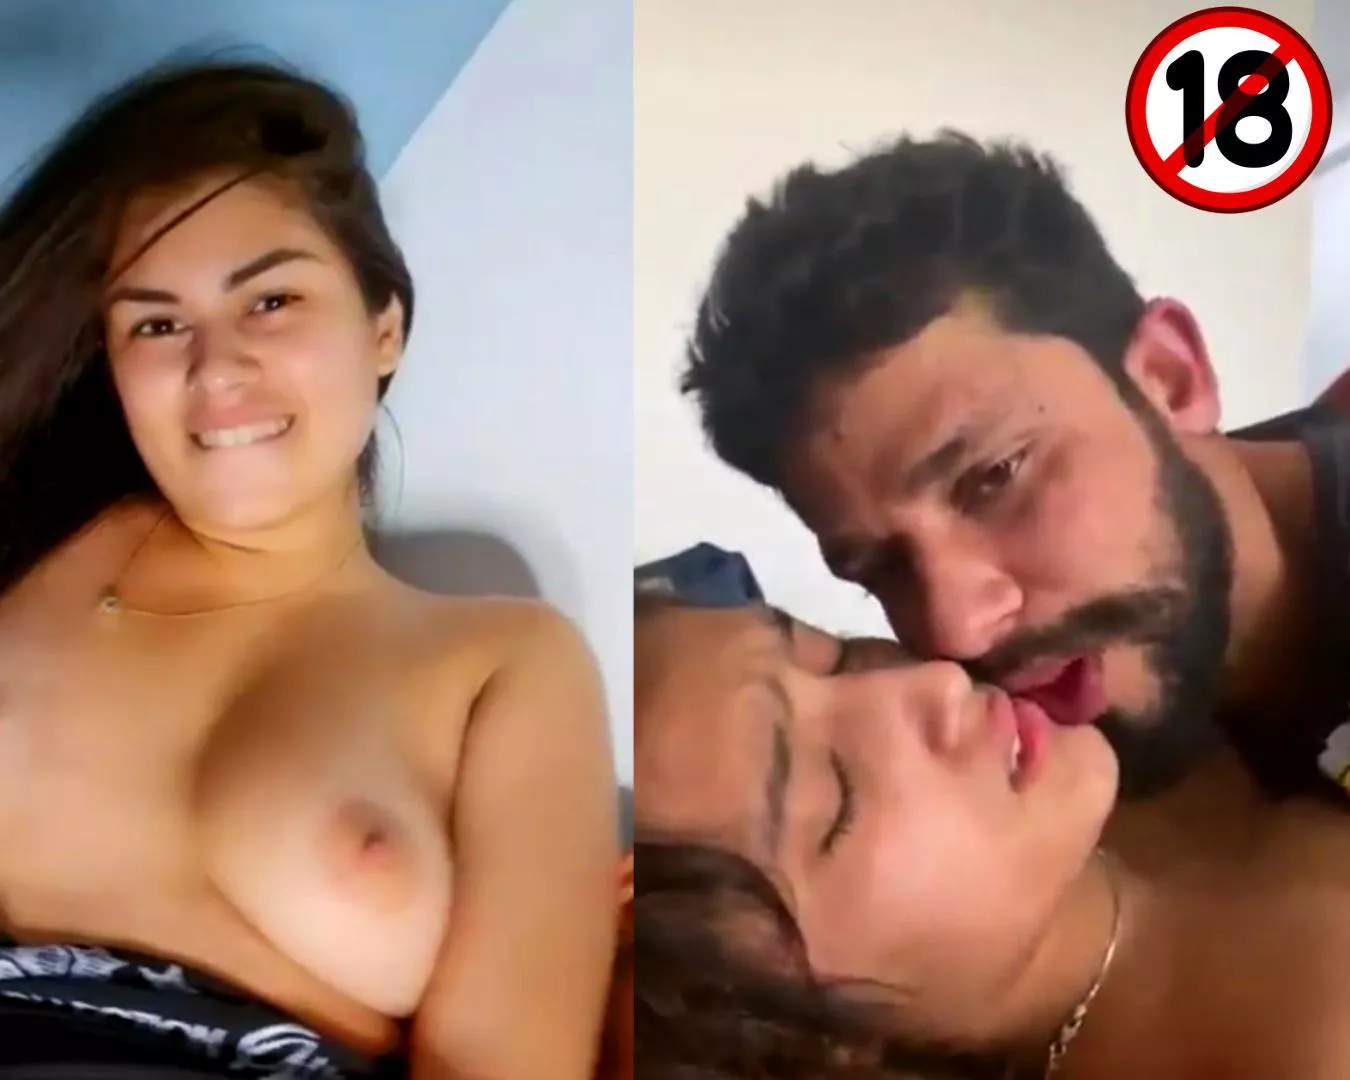 Dasibf - Desi girl enjoying hardcore sex with bf full nude porn picture |  Nudeporn.org